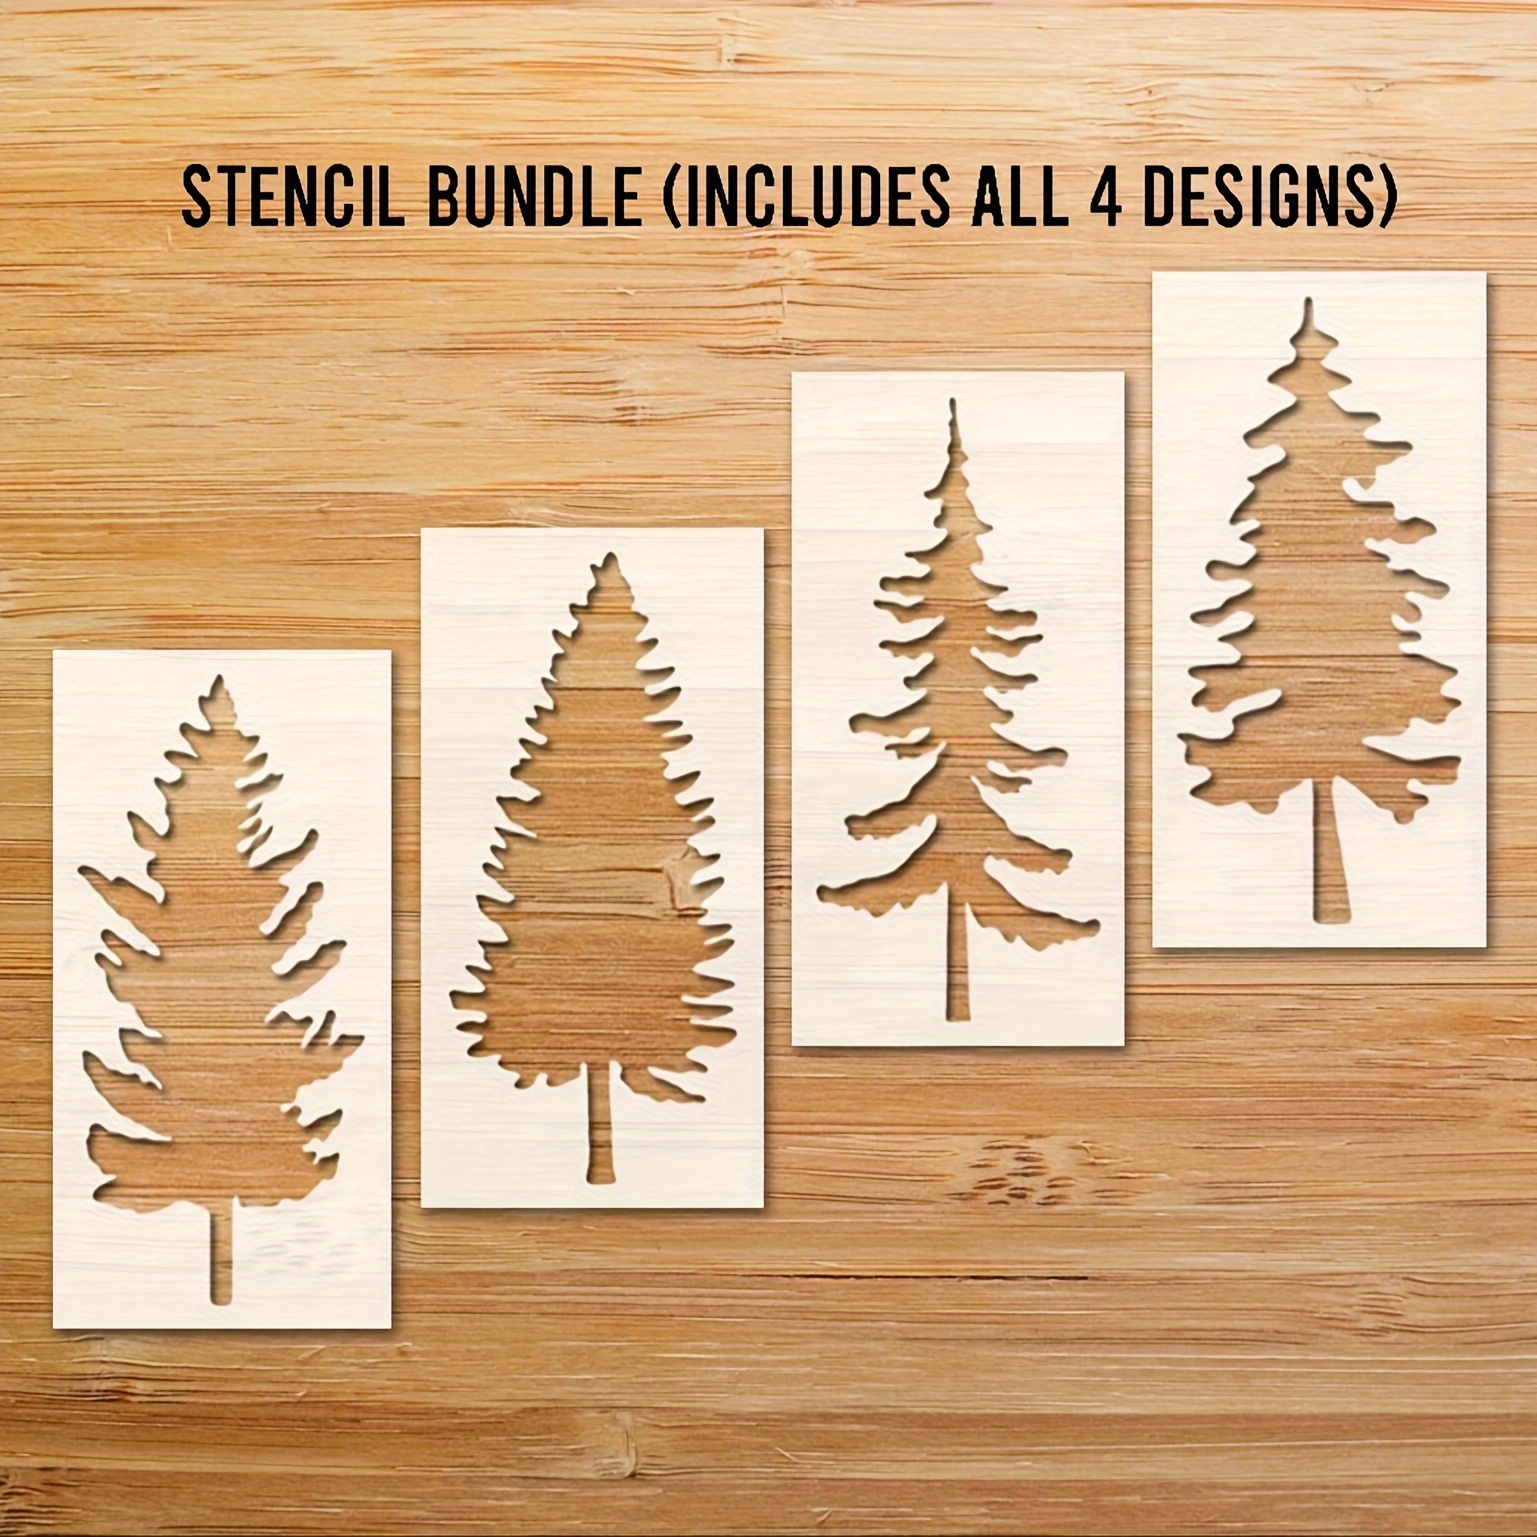 Stencil, Skinny Tree Stencil , Tree Stencil, Christmas Tree Stencils,  Evergreen Tree Stencil, Farm Fresh Trees Stencil